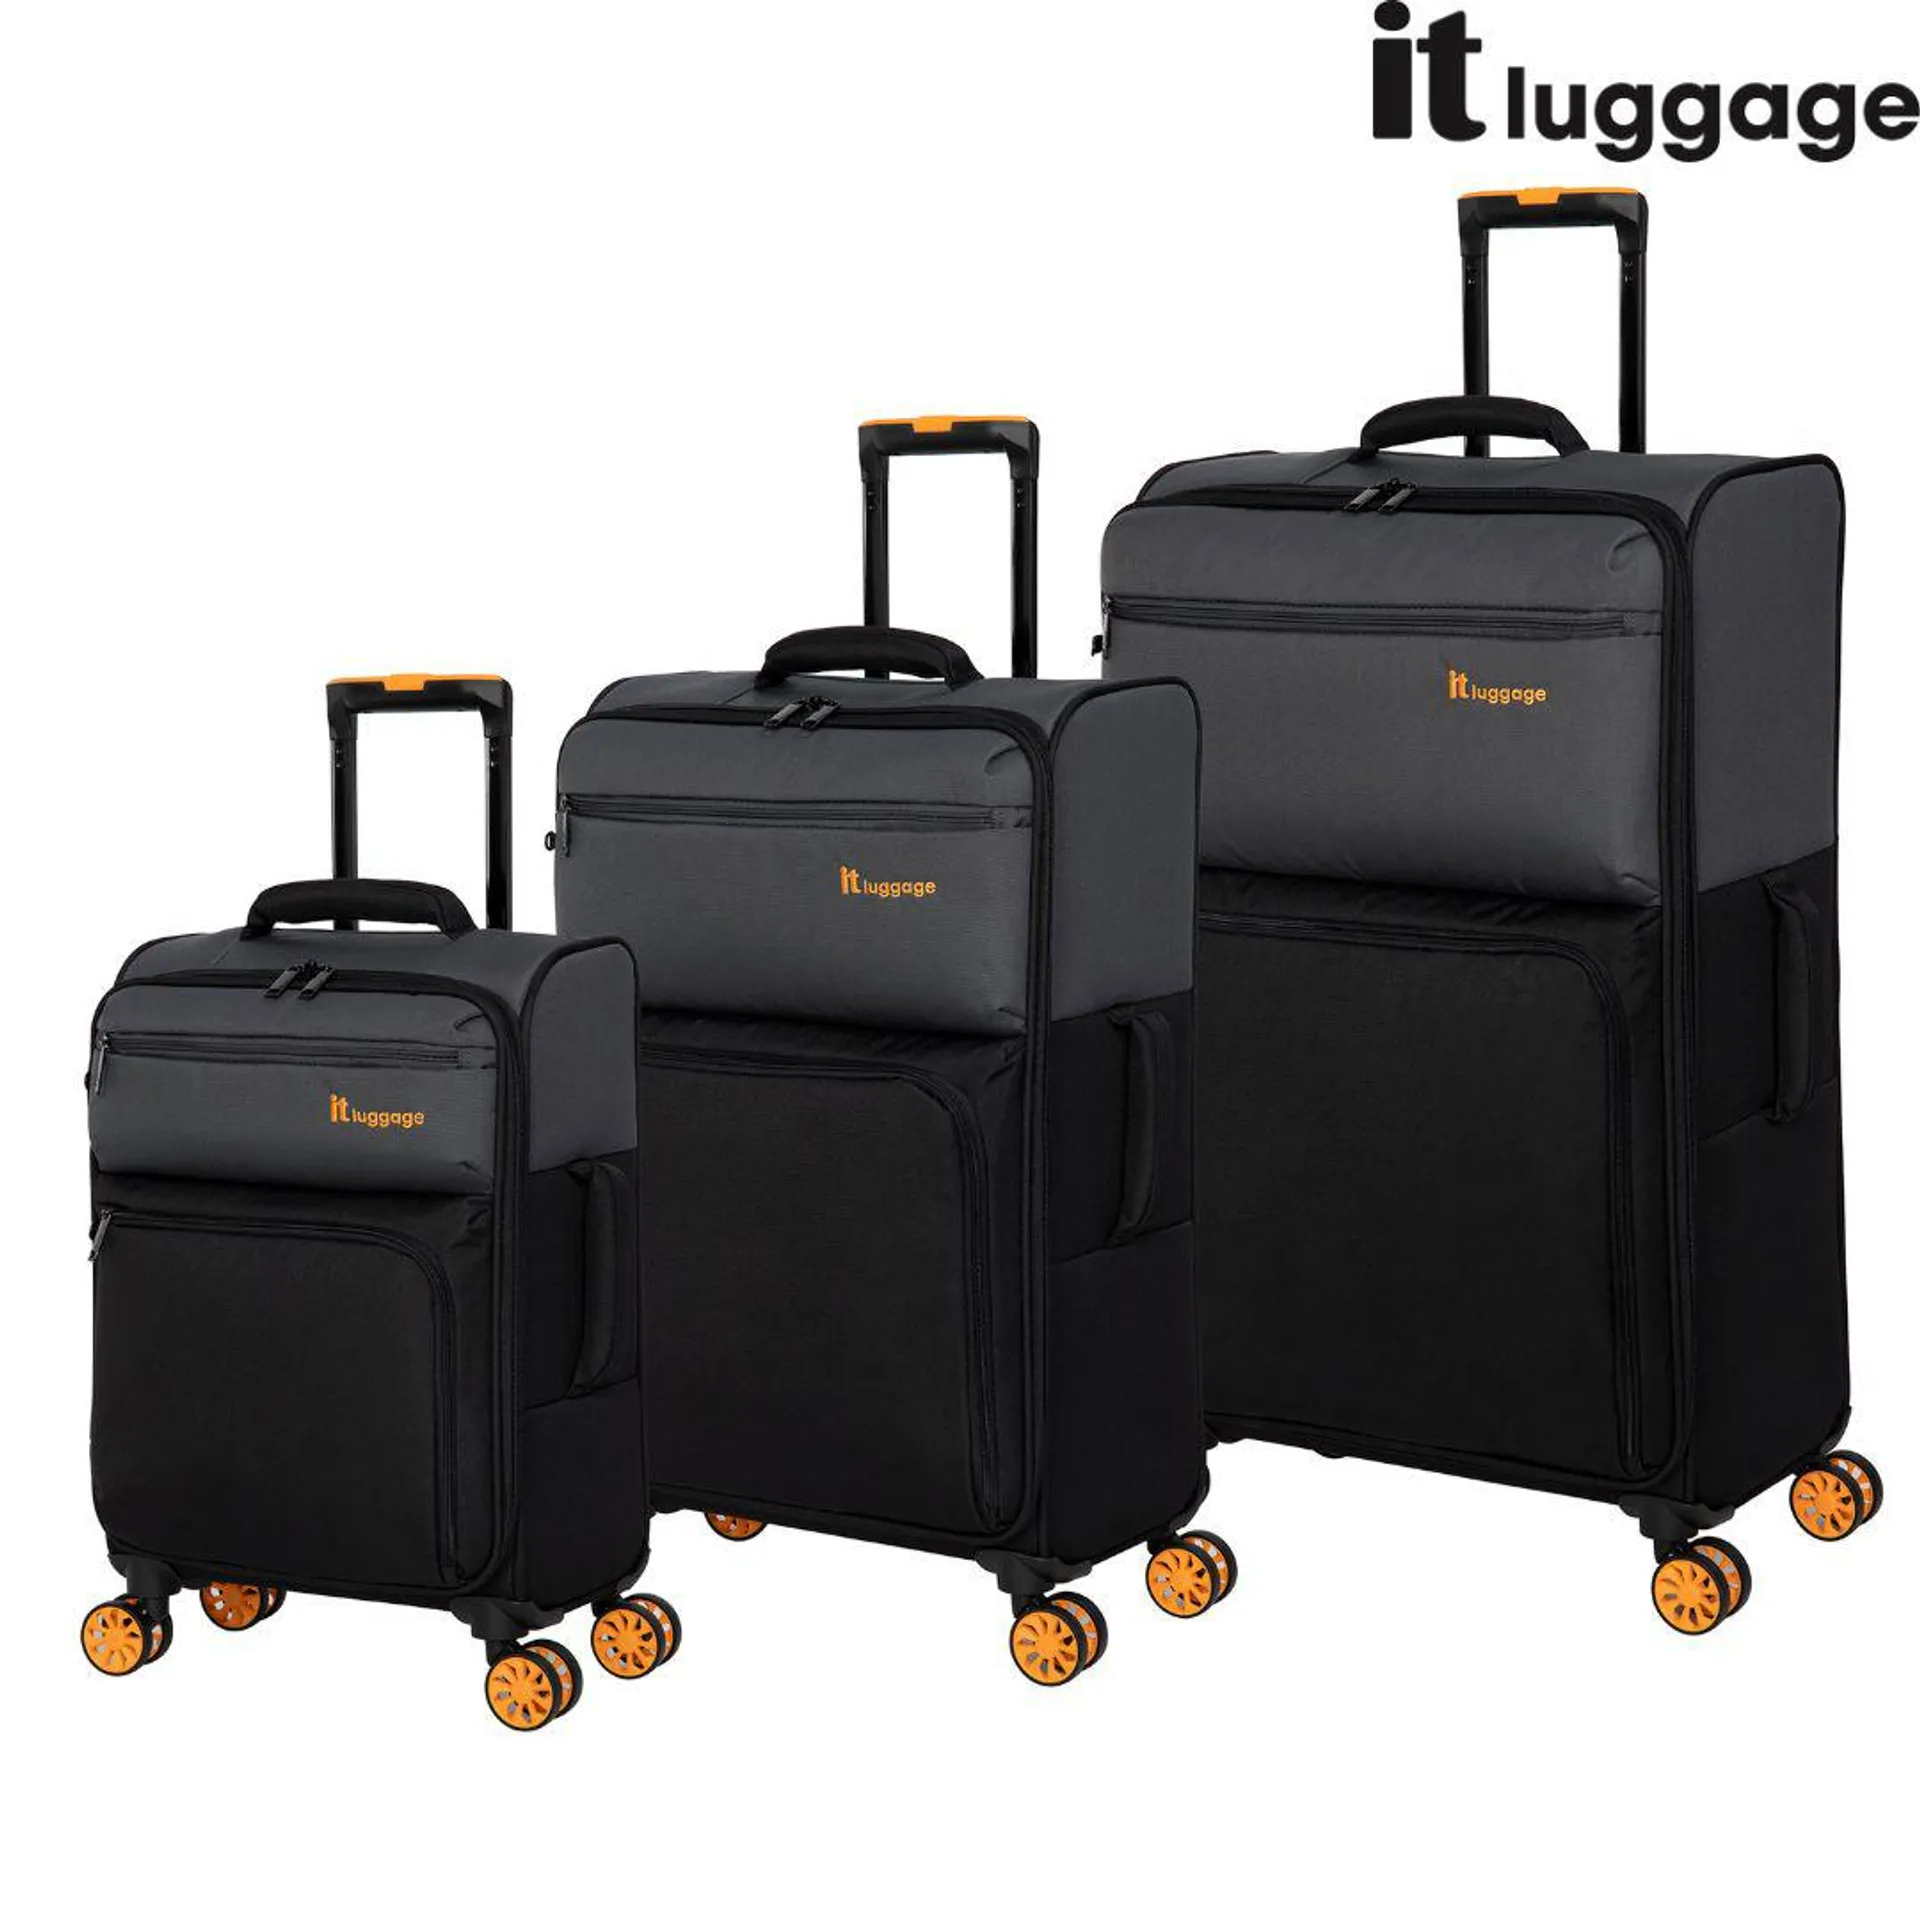 It Luggage Suitcase Megalite Duo-Tone 8 Wheel Eva Luggage Pewter/Black